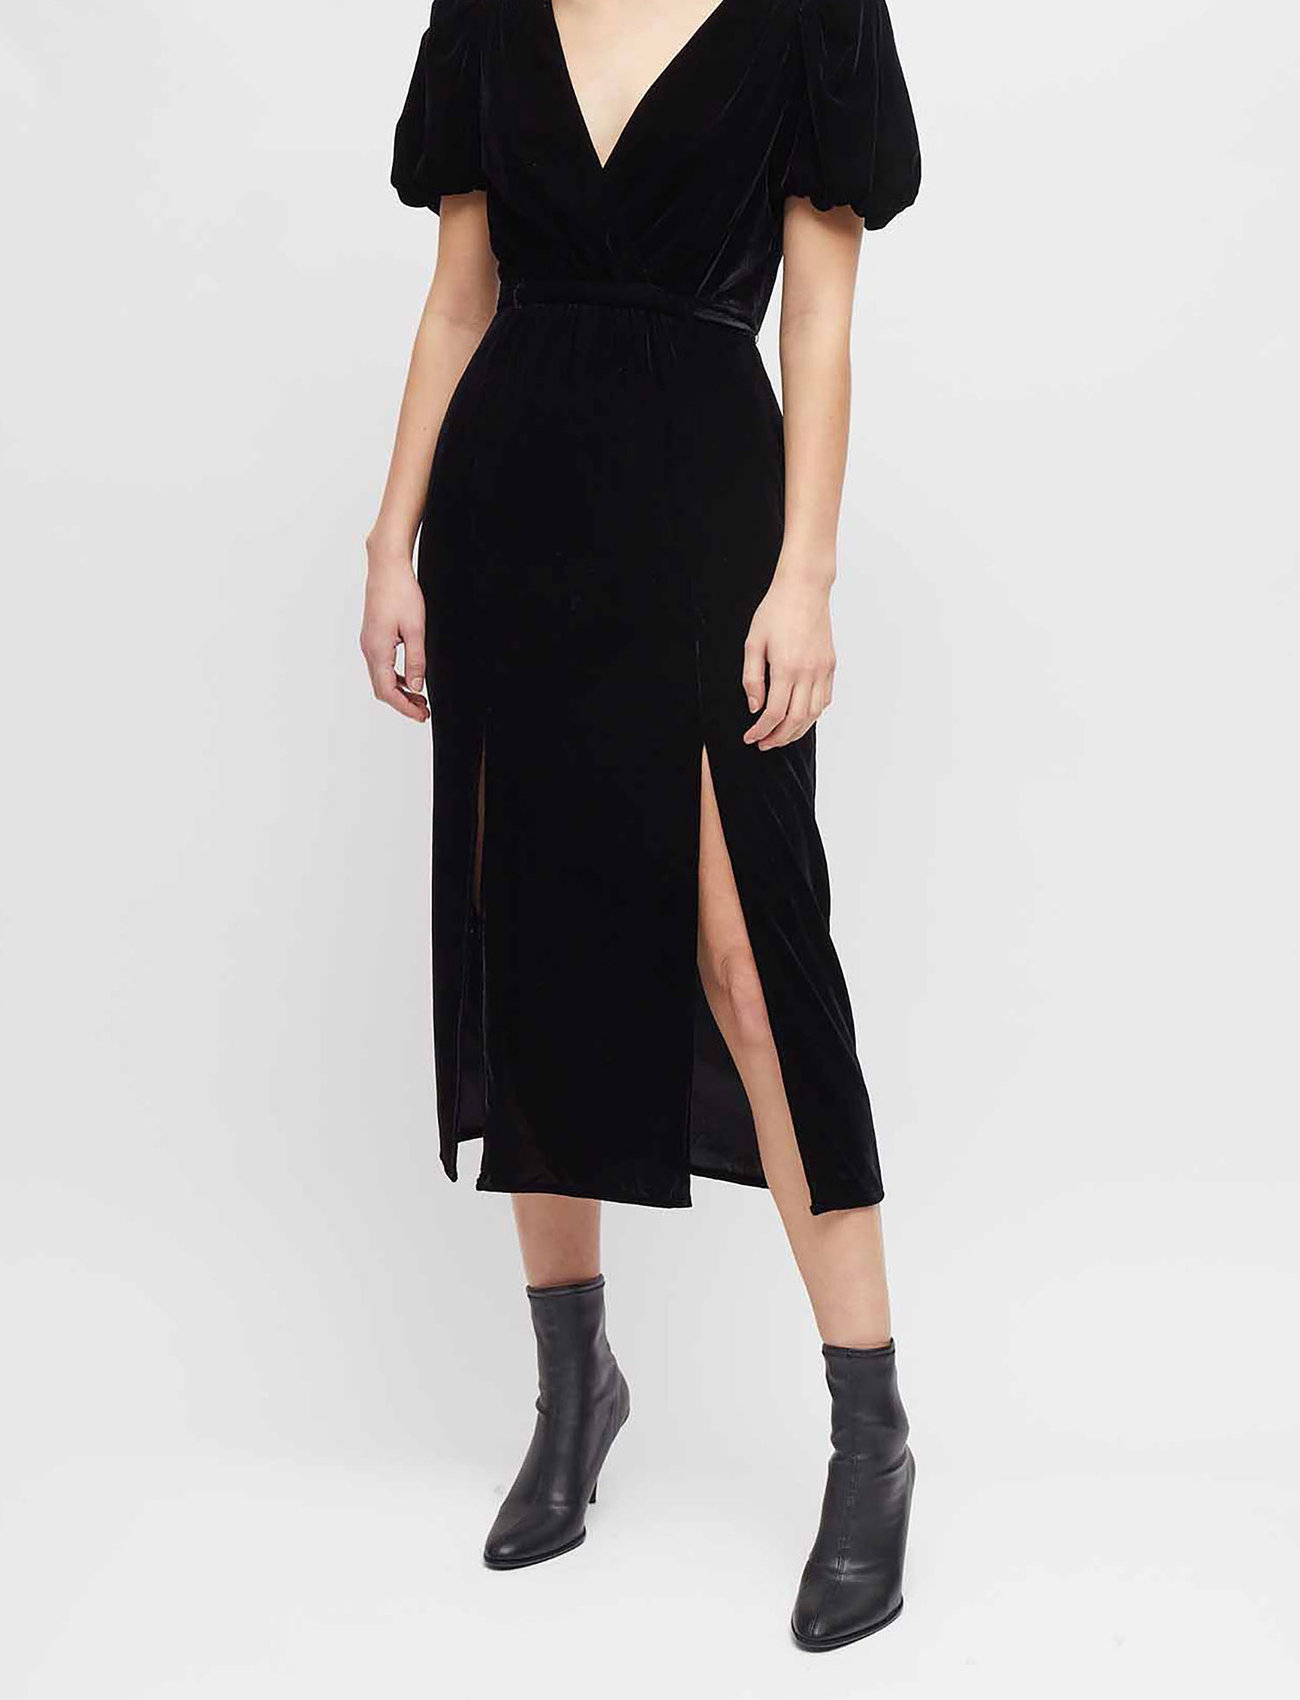 fortjener Klemme entreprenør French Connection Ilavia Velvet Long Dress - Midi kjoler - Boozt.com